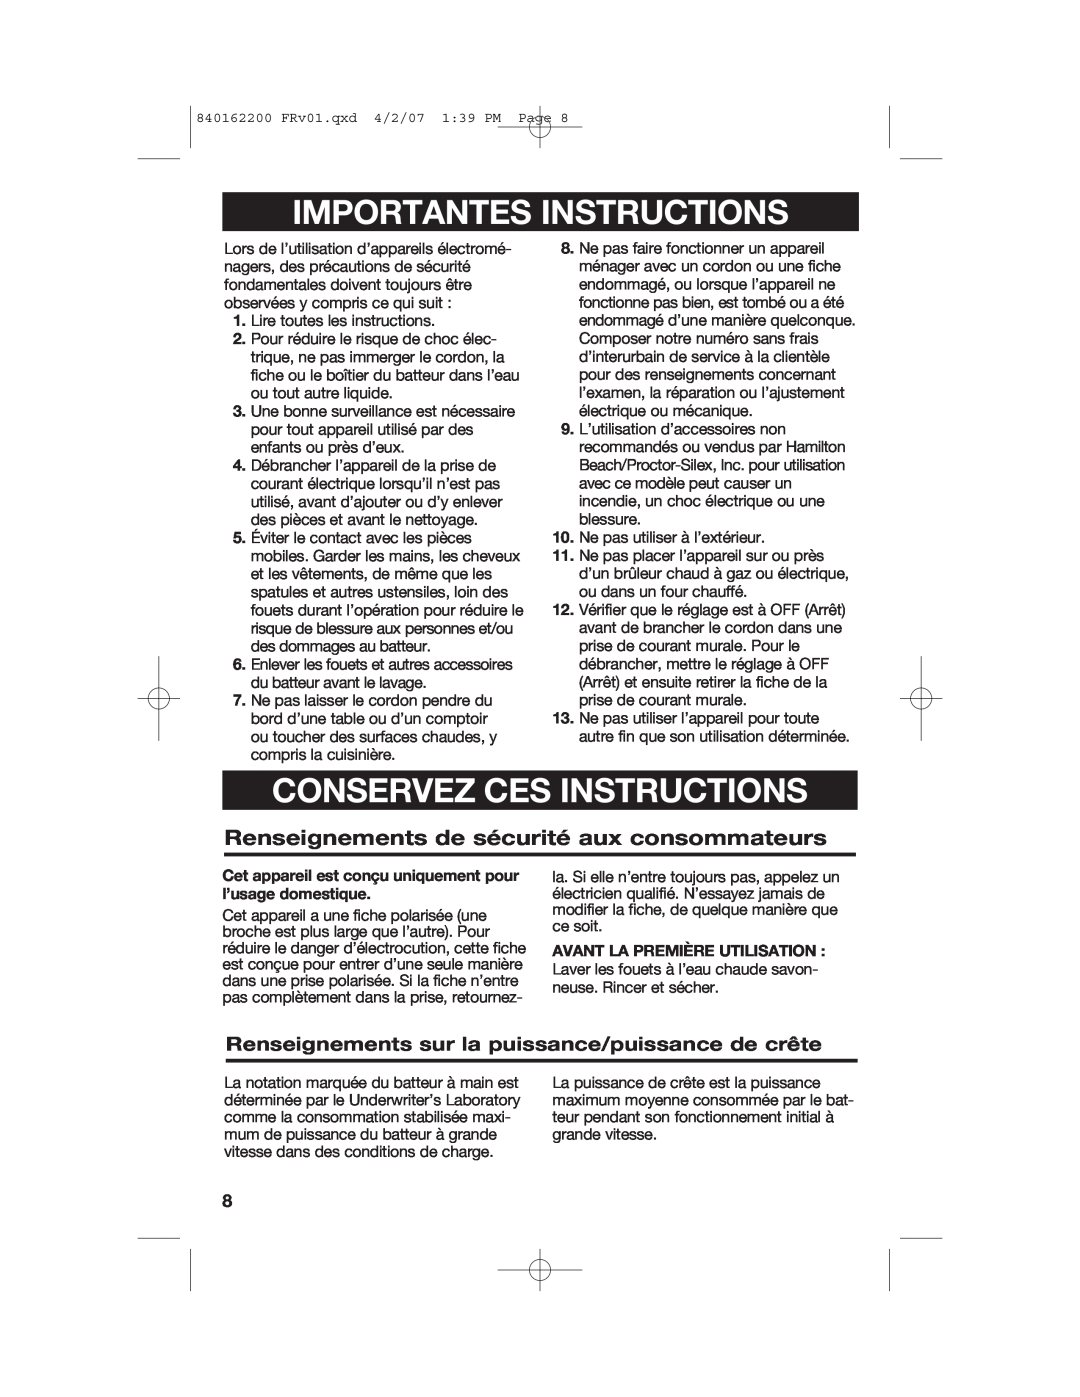 Hamilton Beach 62695NC Importantes Instructions, Conservez Ces Instructions, Renseignements de sécurité aux consommateurs 